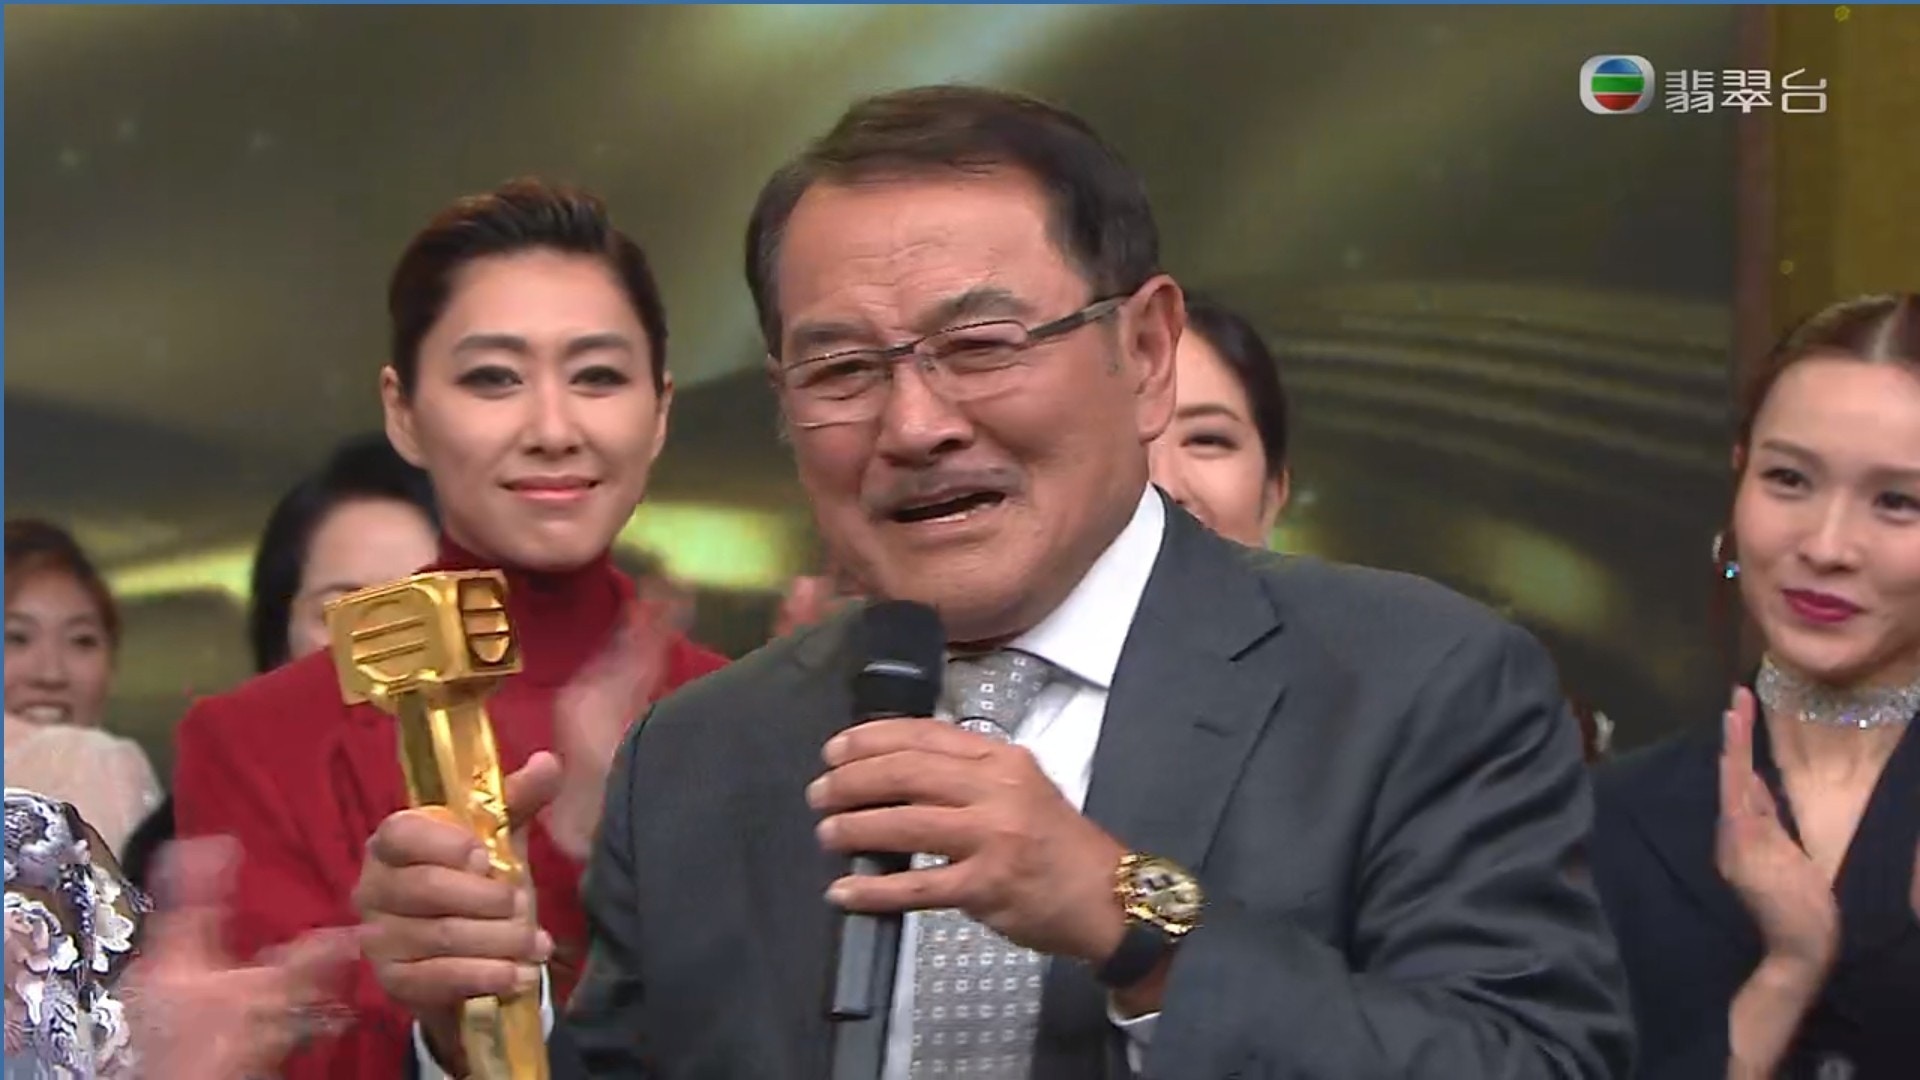 刘丹获颁“万千光辉演艺人大奖”时忍不住掉泪。